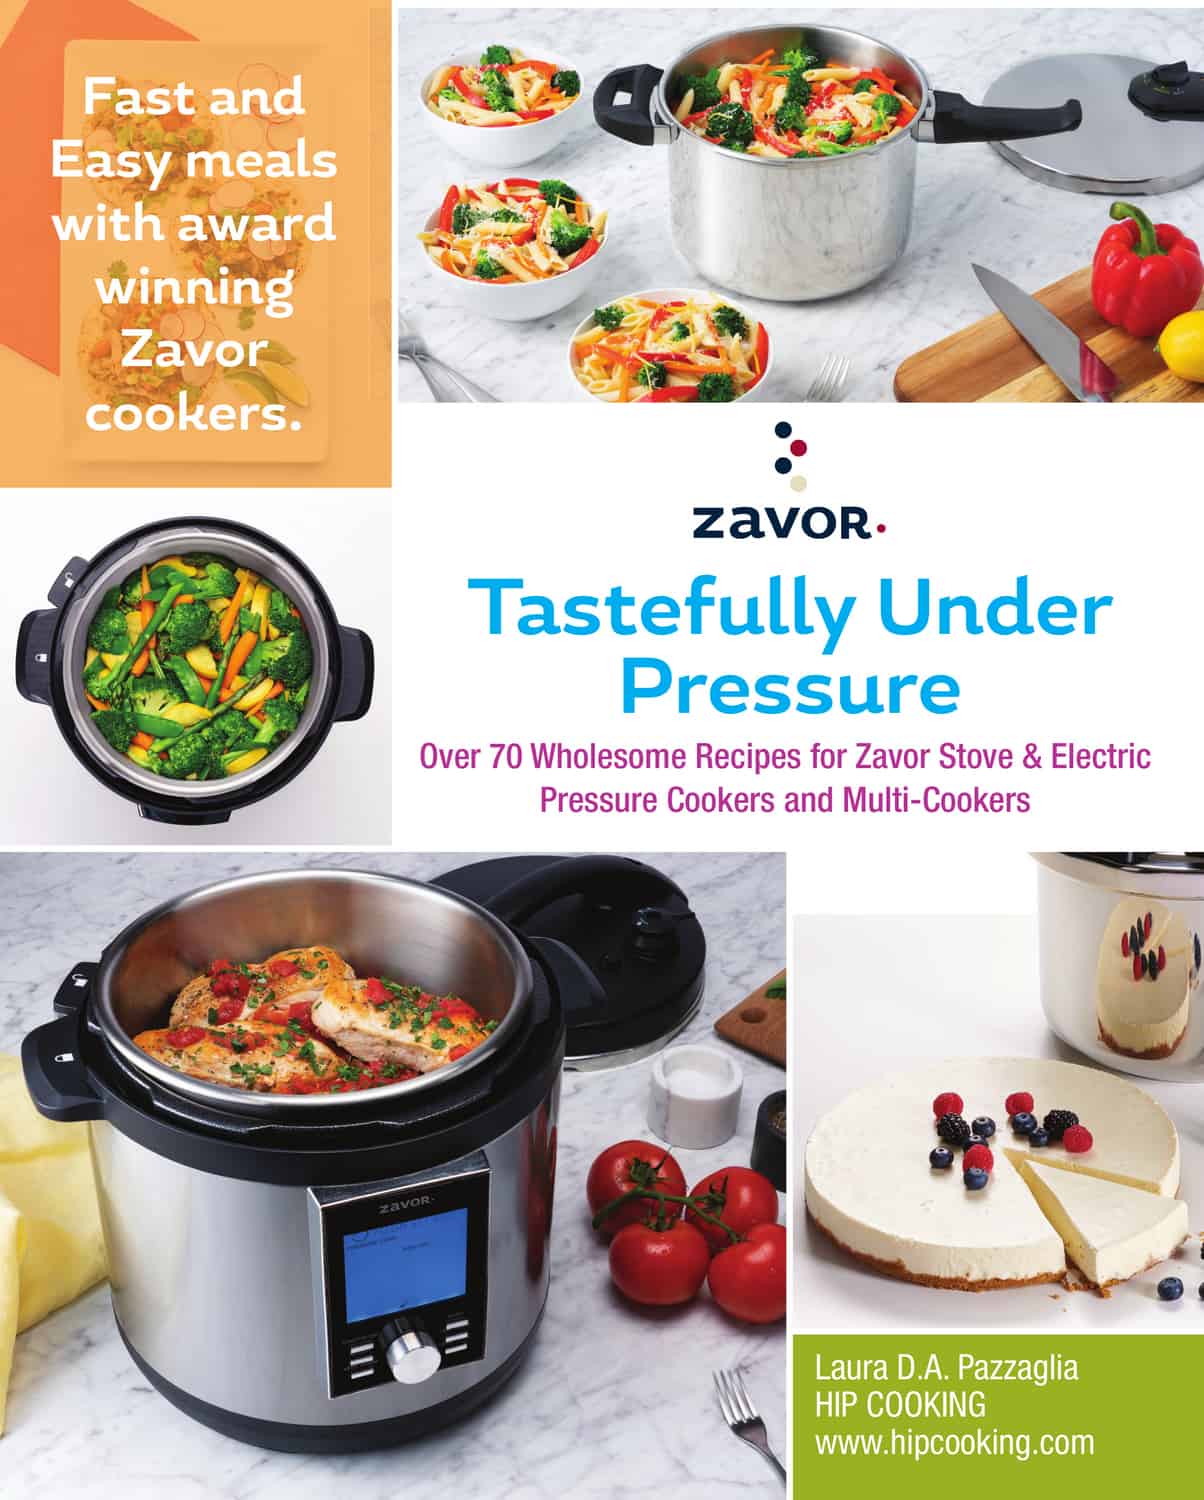 Zavor - Tastefully Under Pressure Cookbook - ZACMIBO22